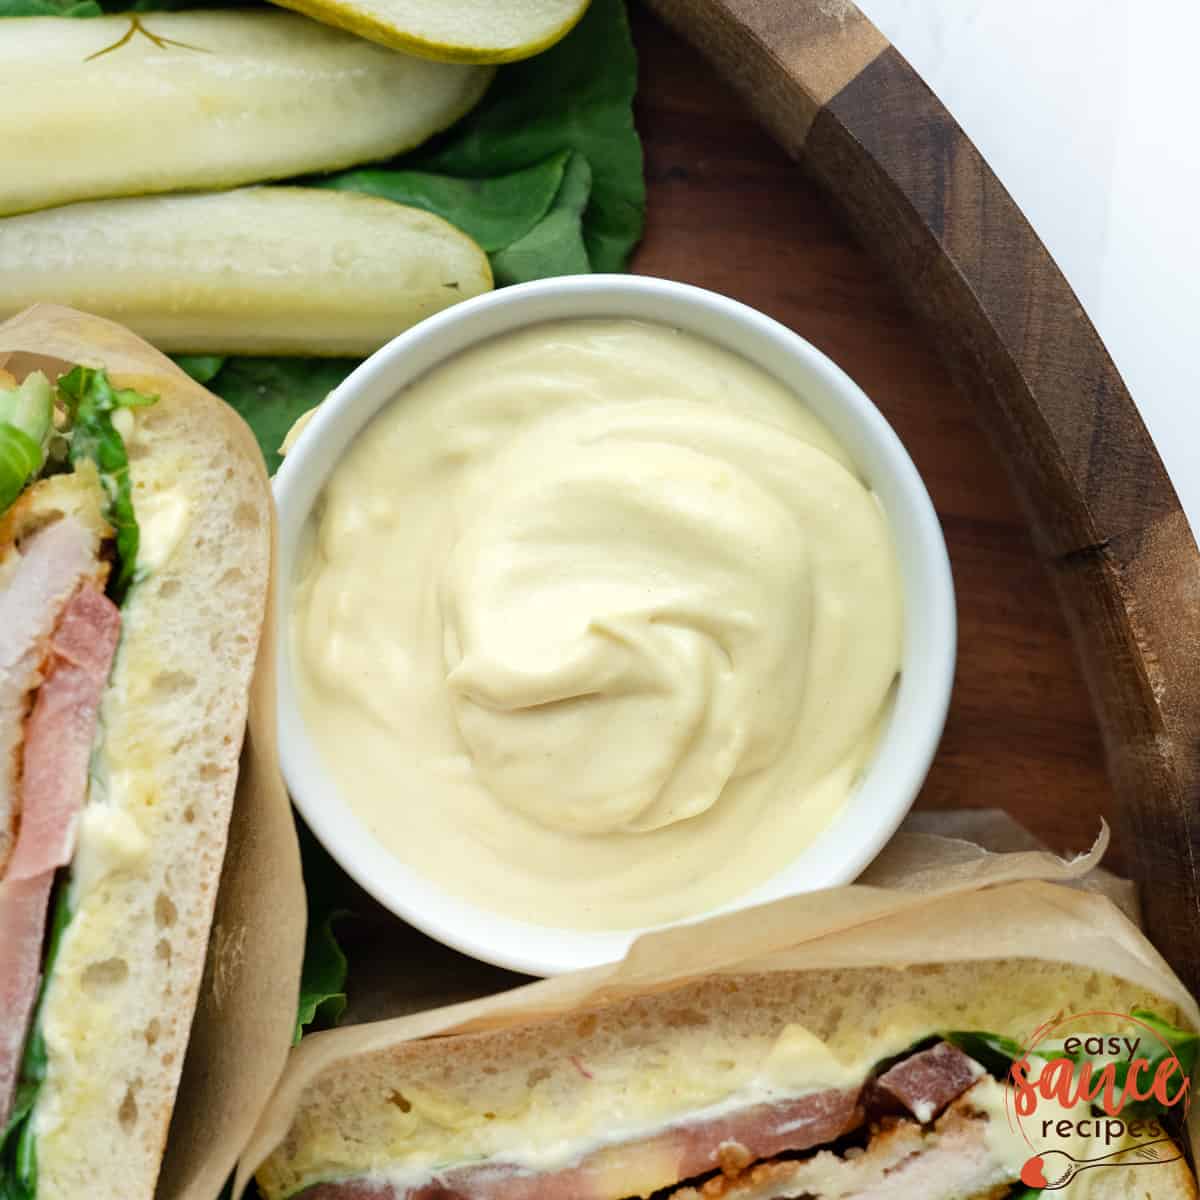 mayo mustard sauce in a ramekin next to pork sandwich